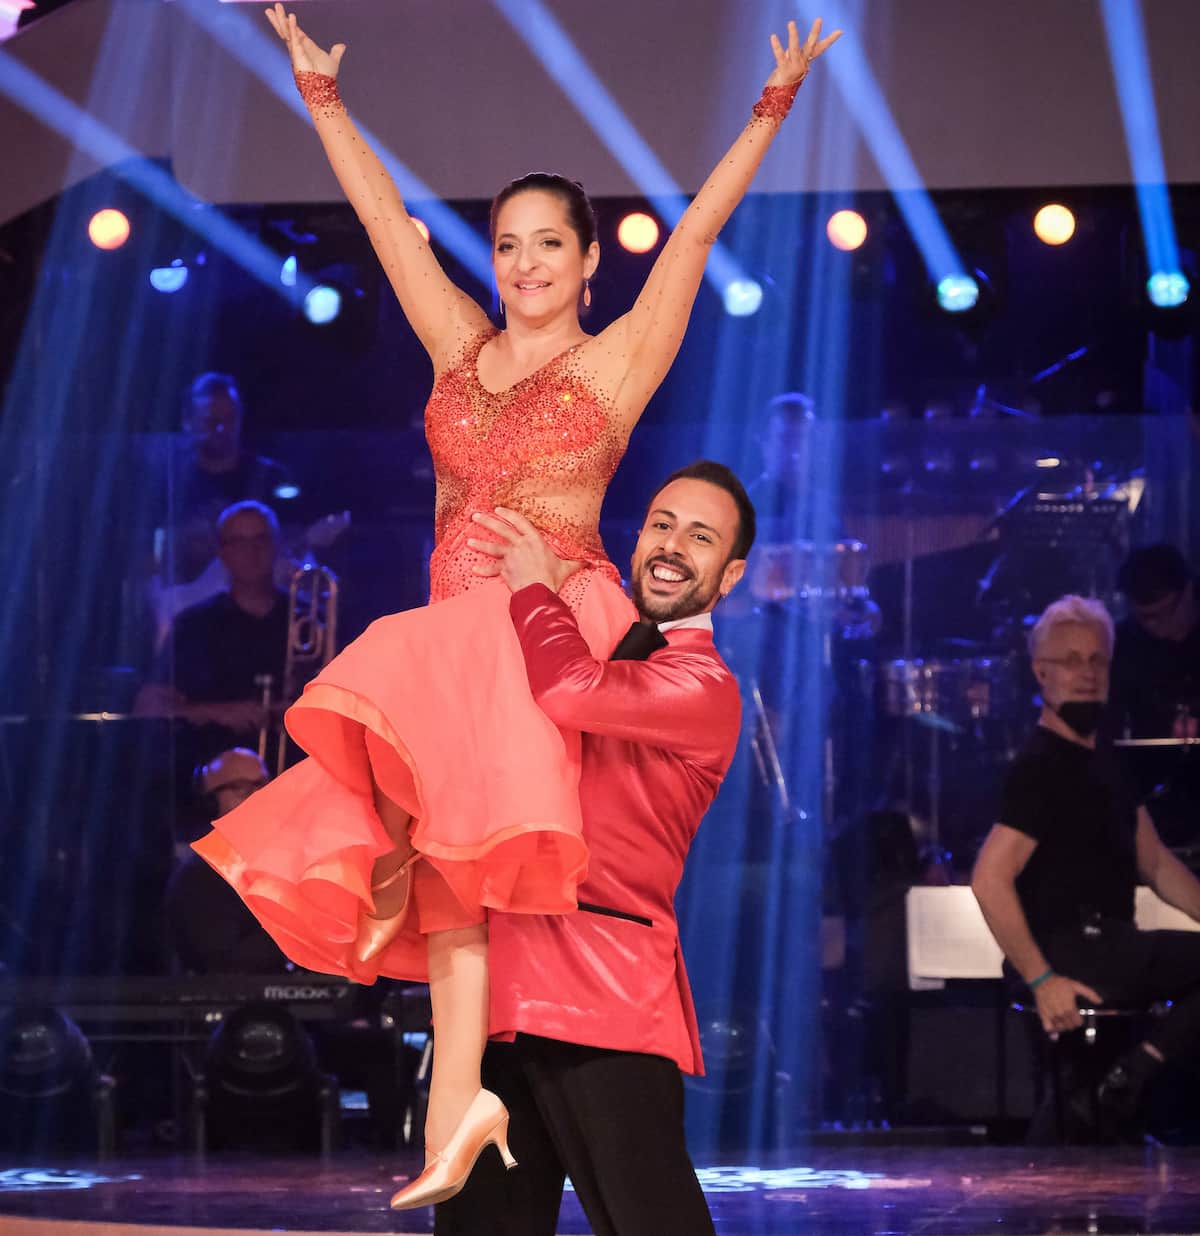 Tanz des Abends bei den Dancing Stars am 1.10.2021 von Caroline Athanasiadis und- Danilo Campisi